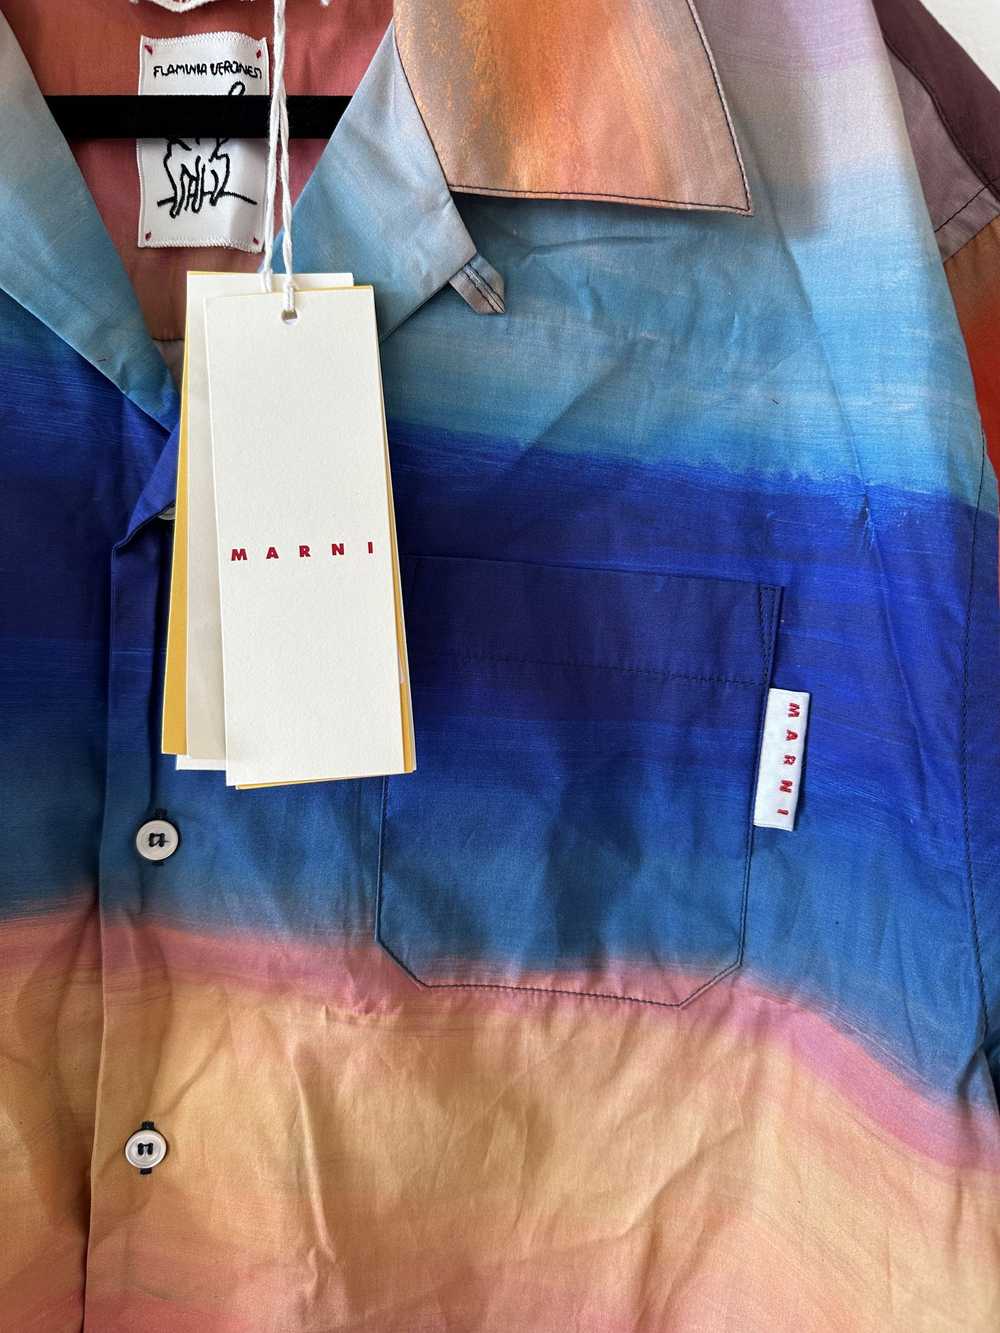 Marni Marni Striped Camp Collar Button Up Shirt - image 2